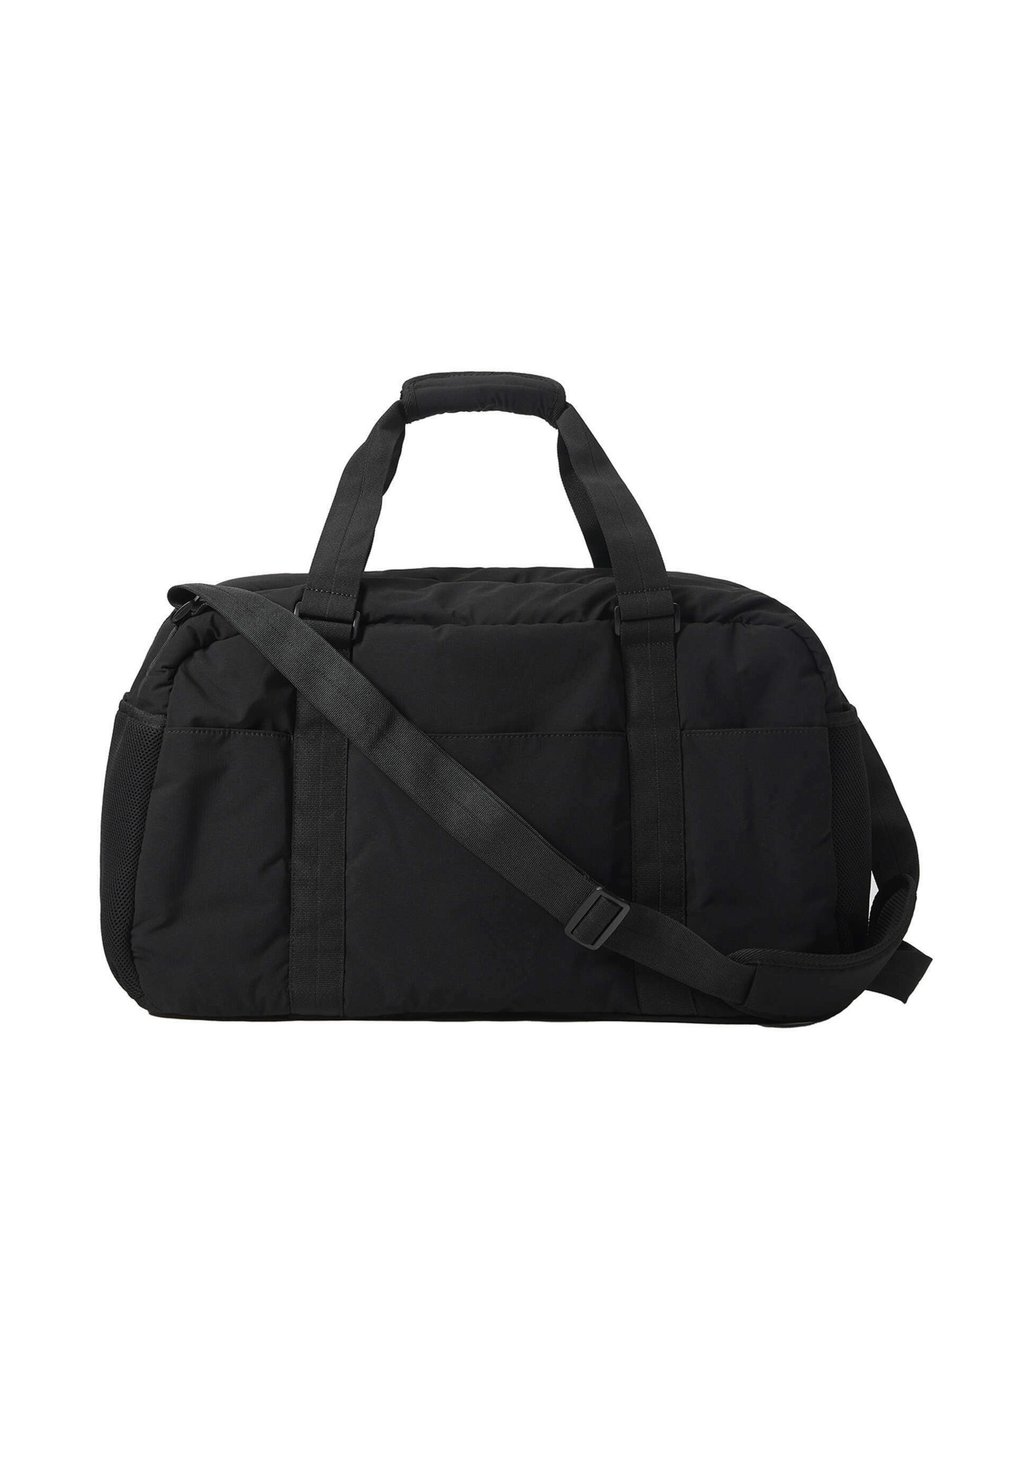 Дорожная сумка TRAVEL BAG OYSHO, цвет black